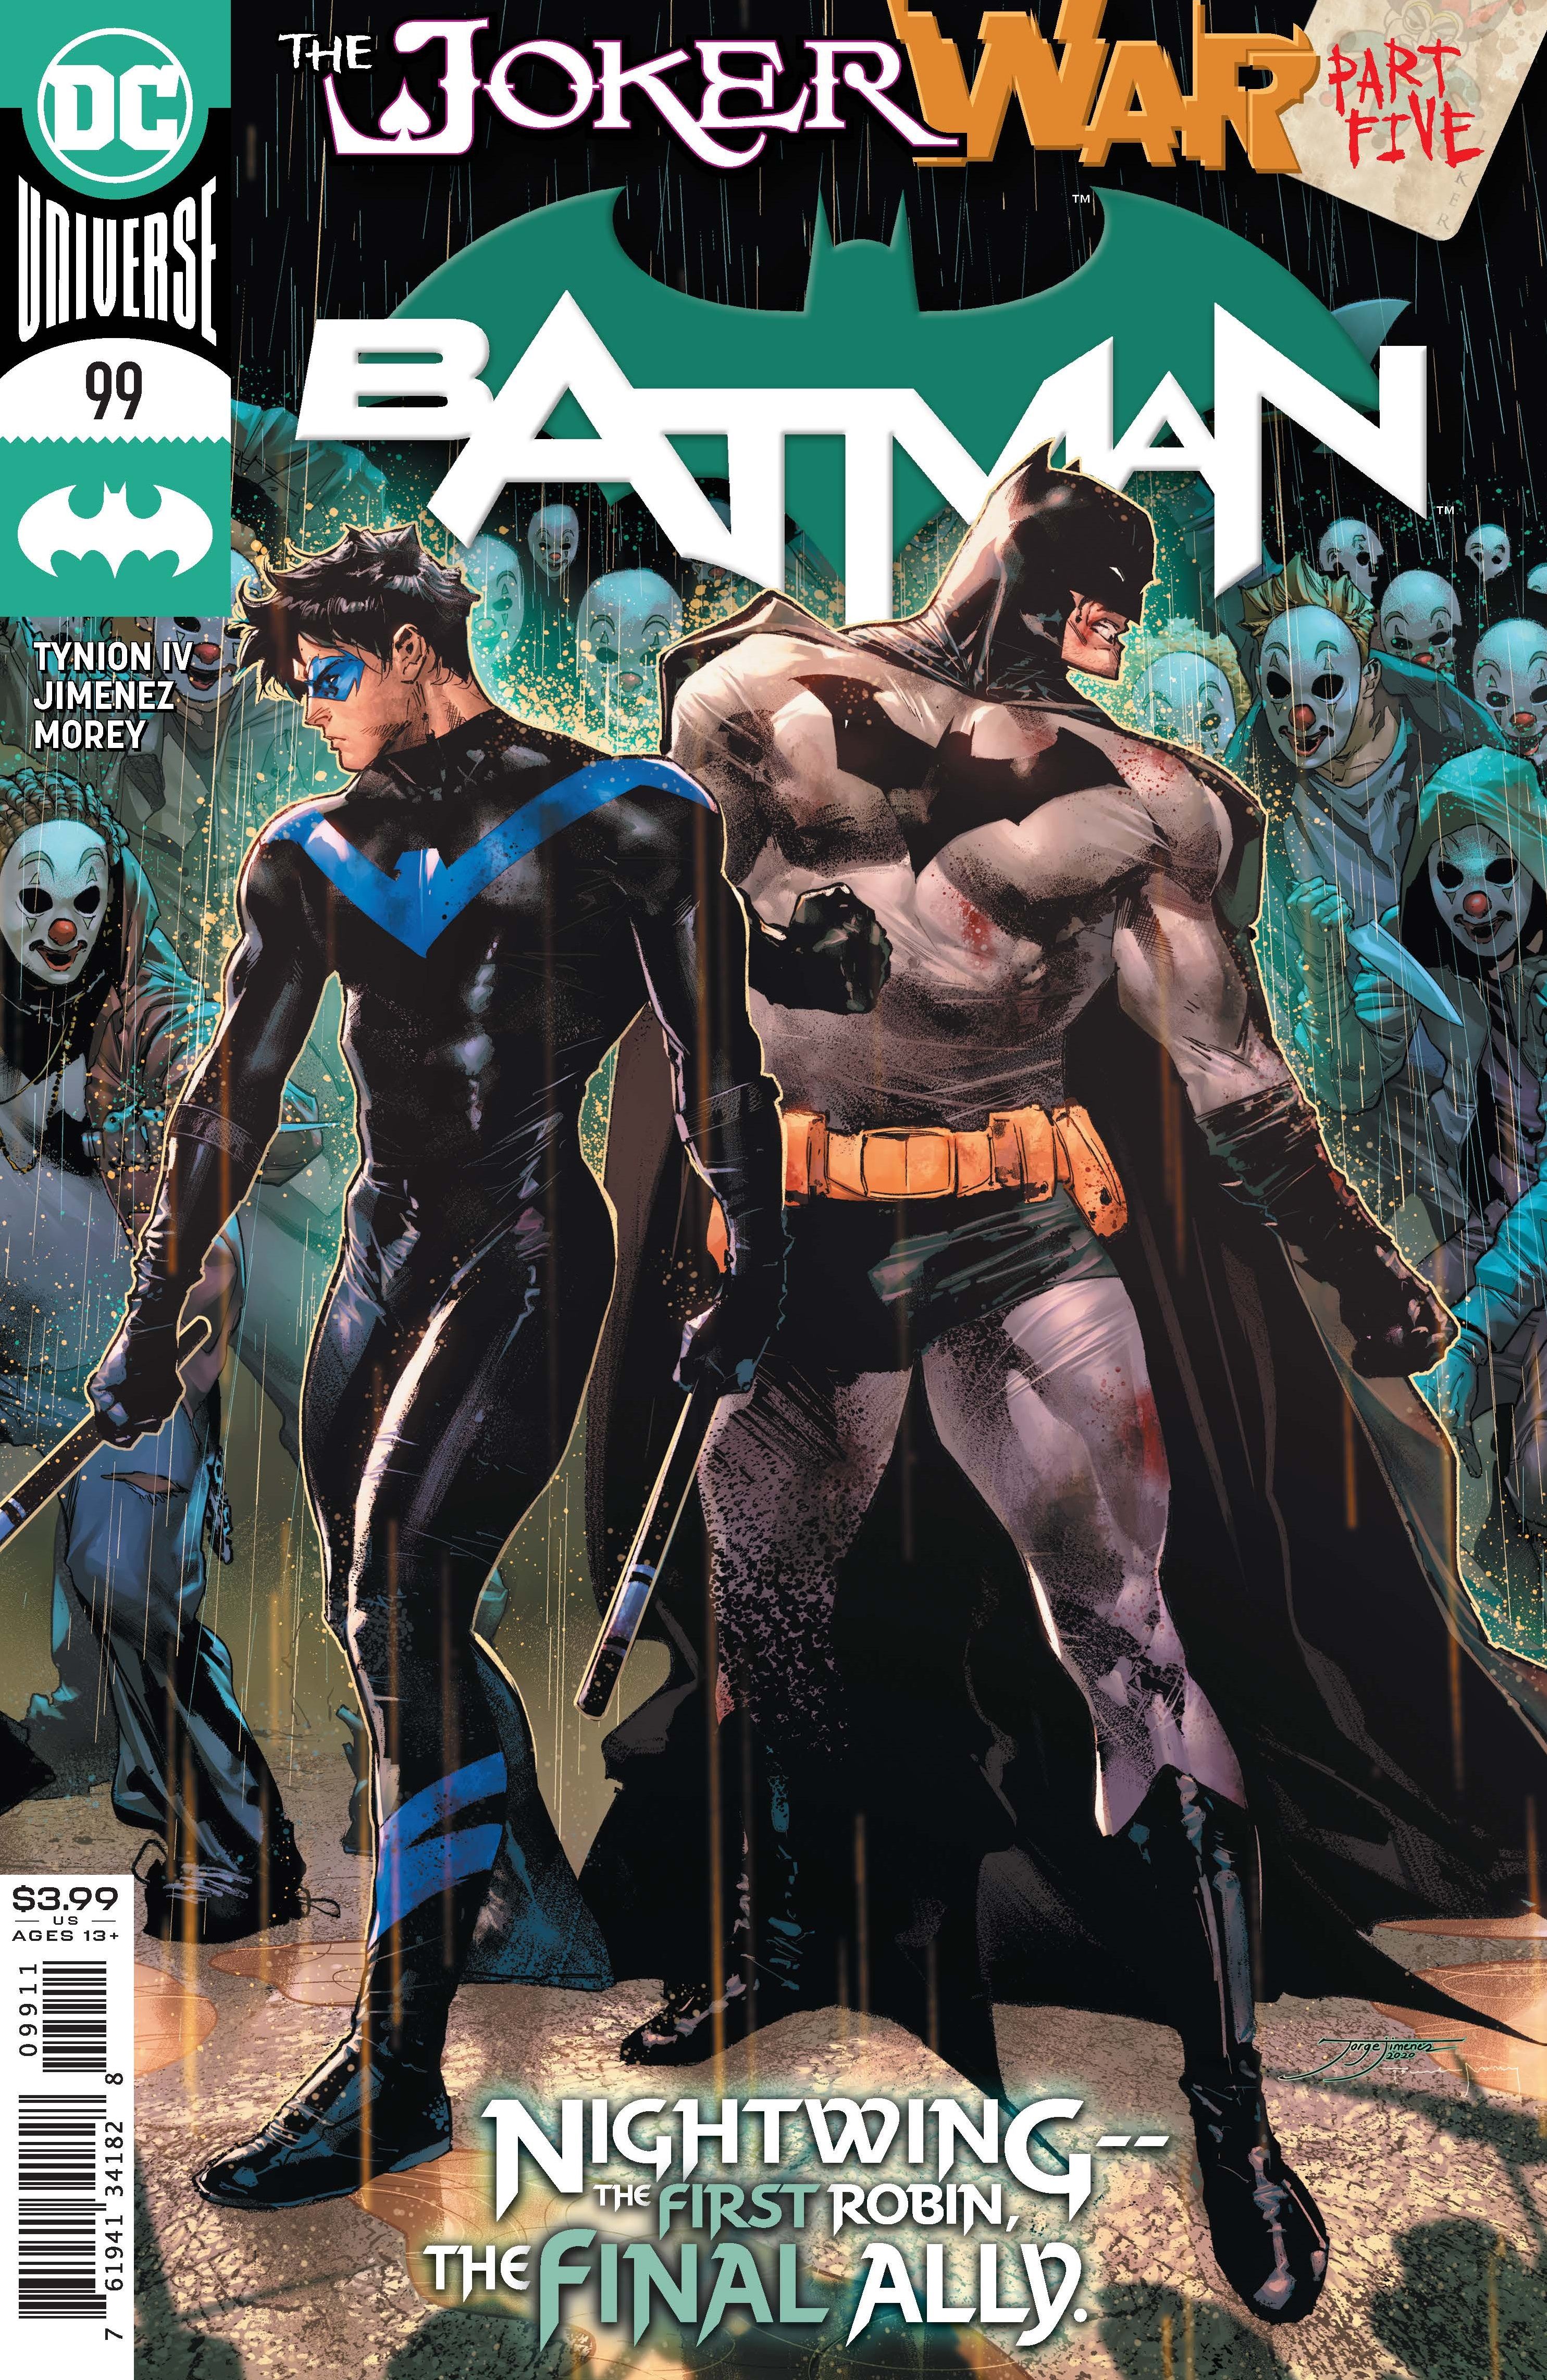 Batman joker war 5 cover